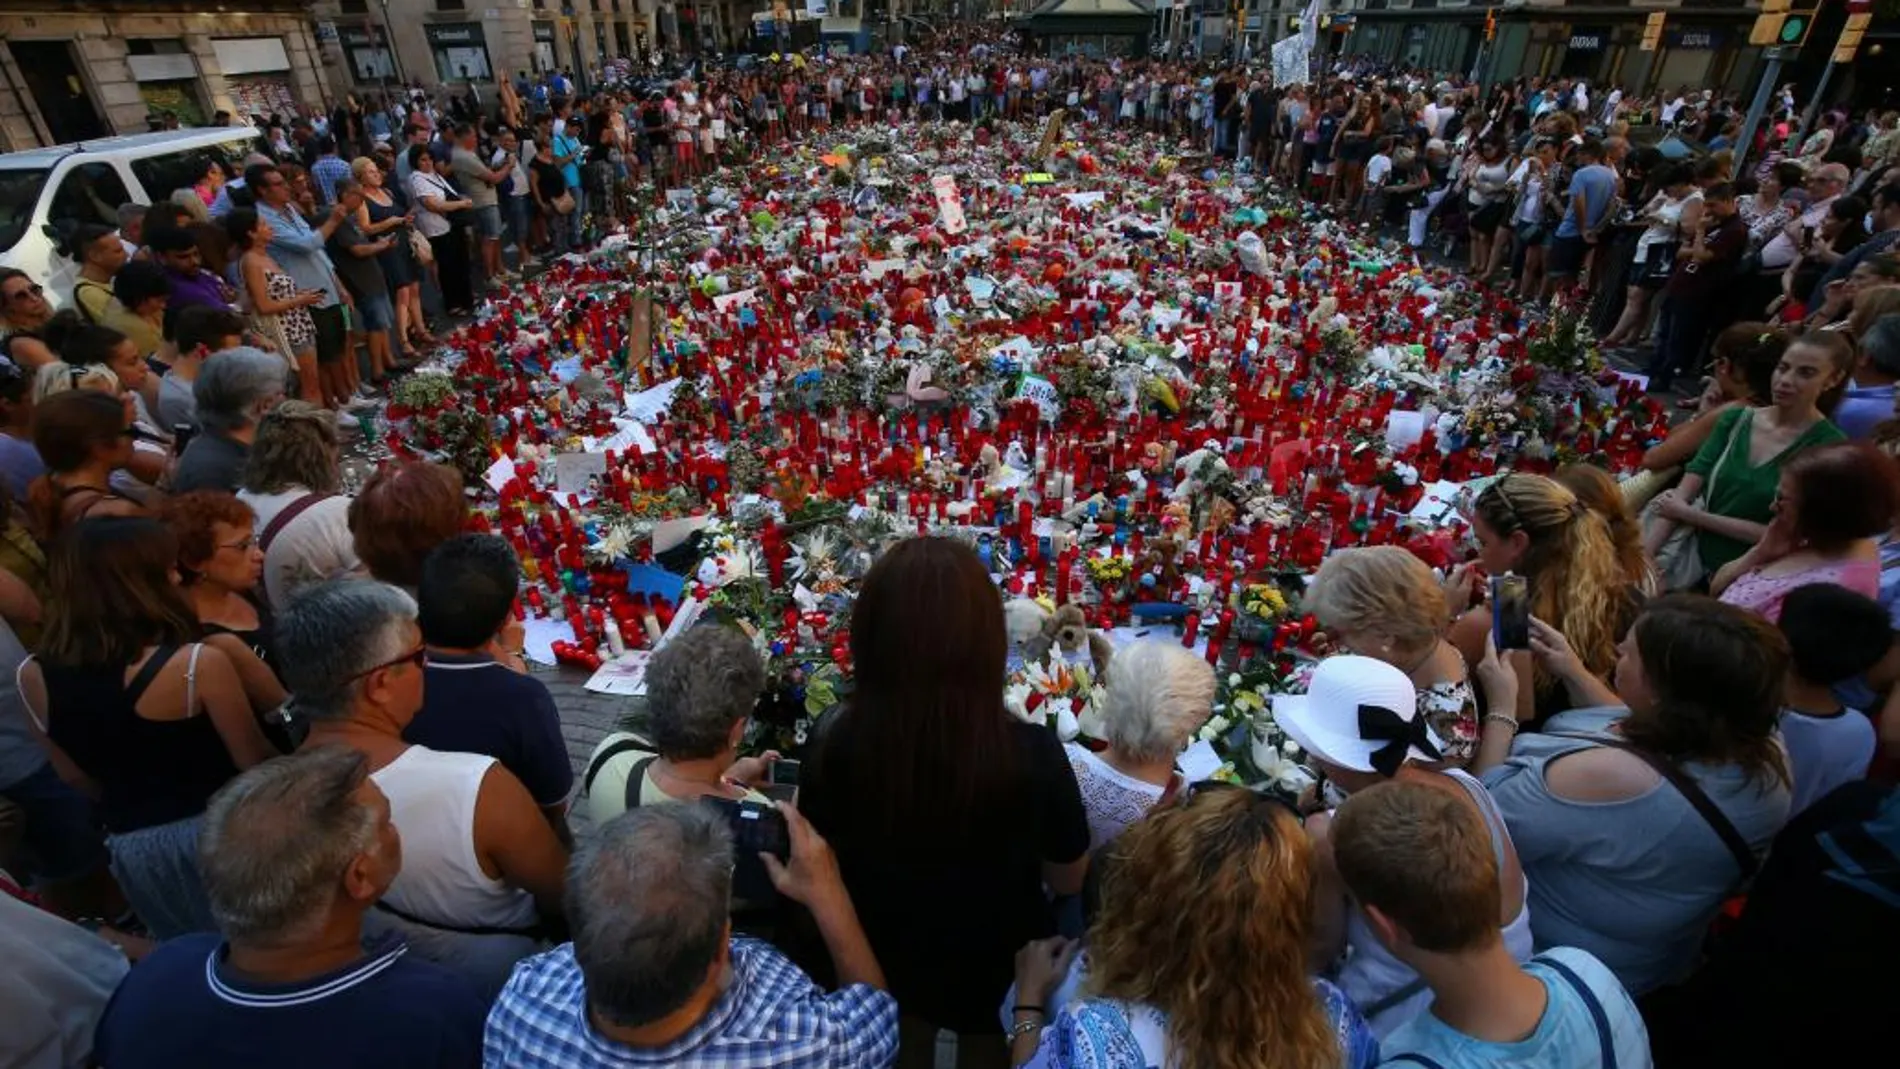 Memorial improvisado por los barceloneses en el lugar del atentado